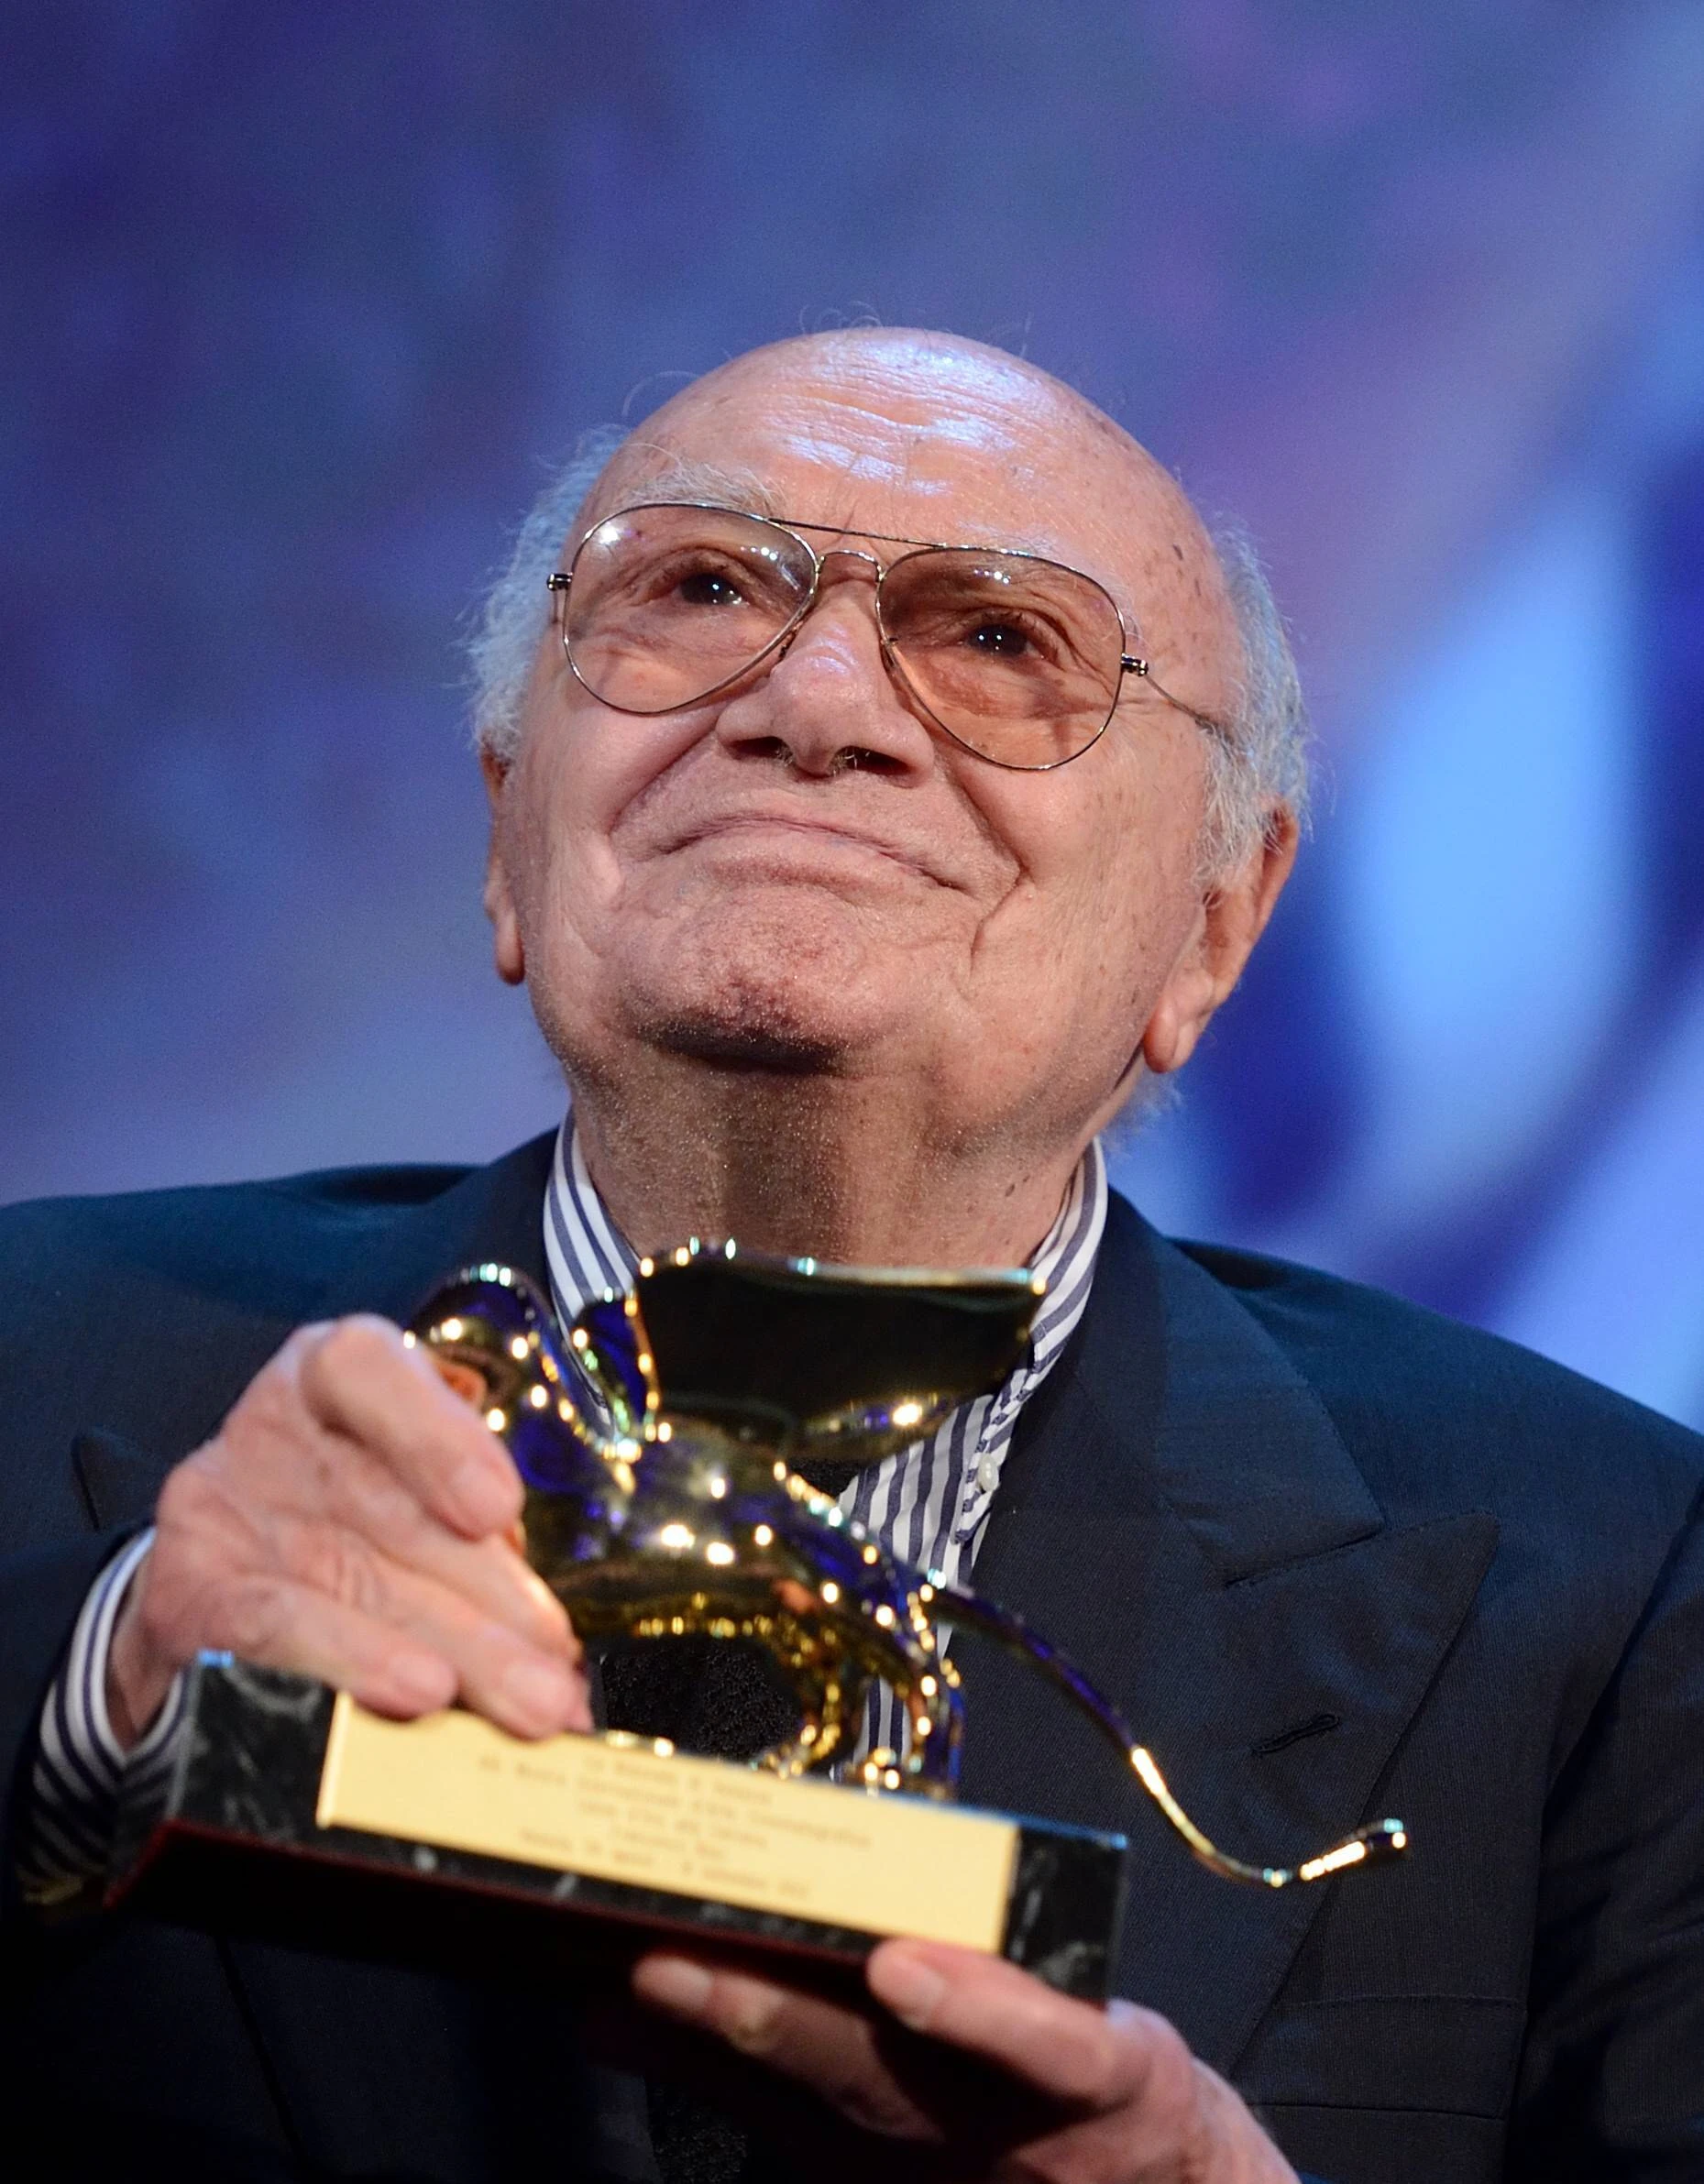 Francesco Rosi im Alter von rund 90 Jahren 2012 beim Filmfestival in Venedig, wo er mit einem "Goldenen Löwen" für sein Lebenswerk geehrt wurde (IMAGO / Xinhua)